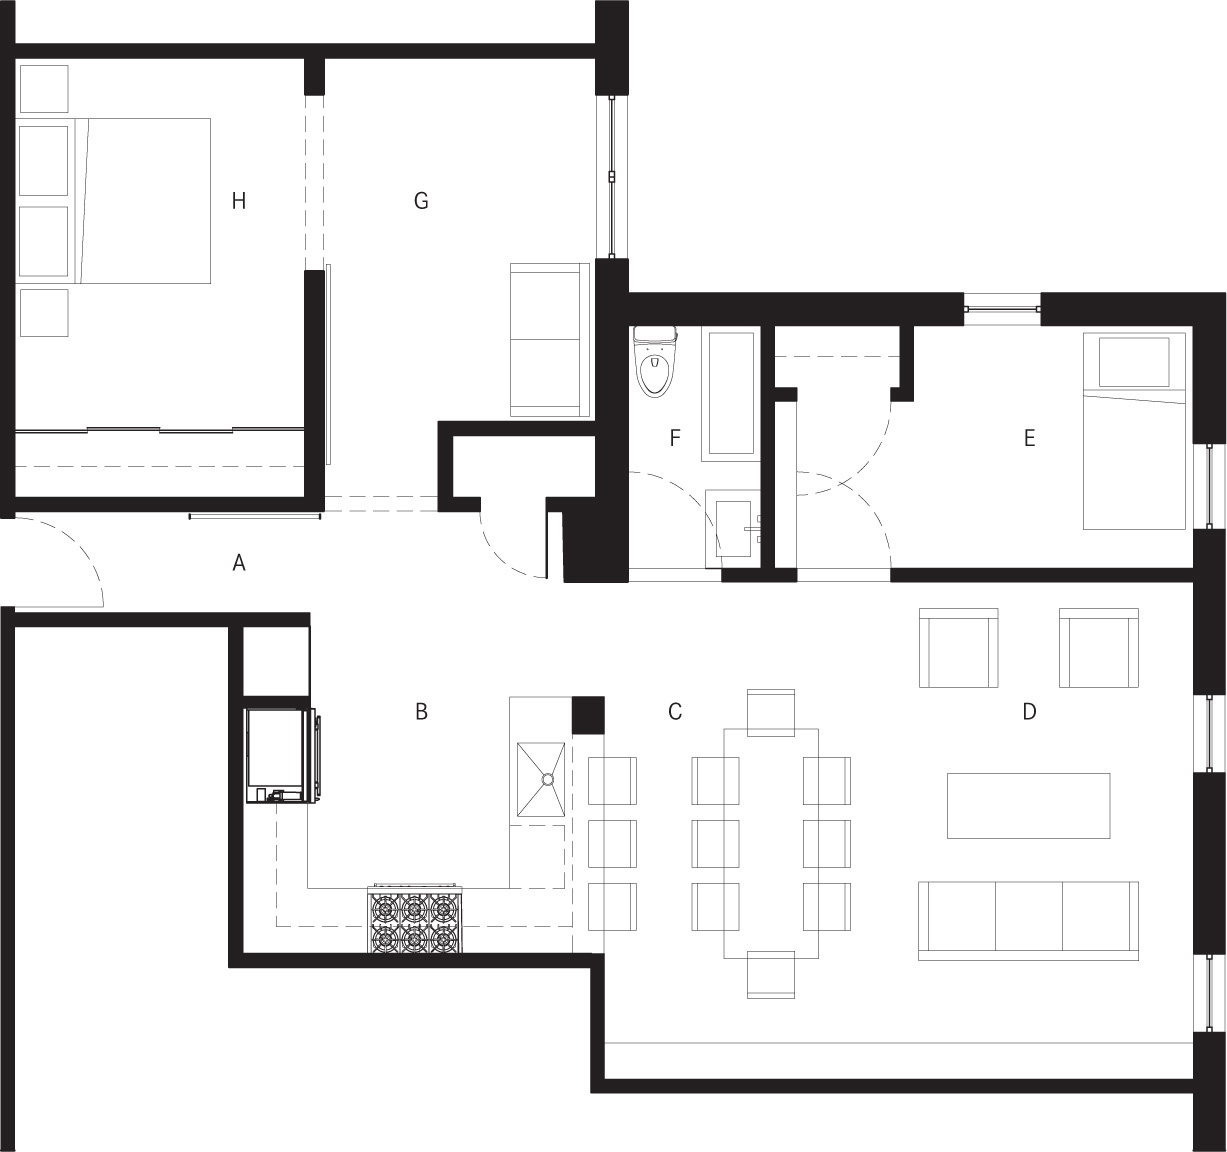 Floor plan AEntry hall BKitchen CDining area DLiving area EKids bedroom - photo 4